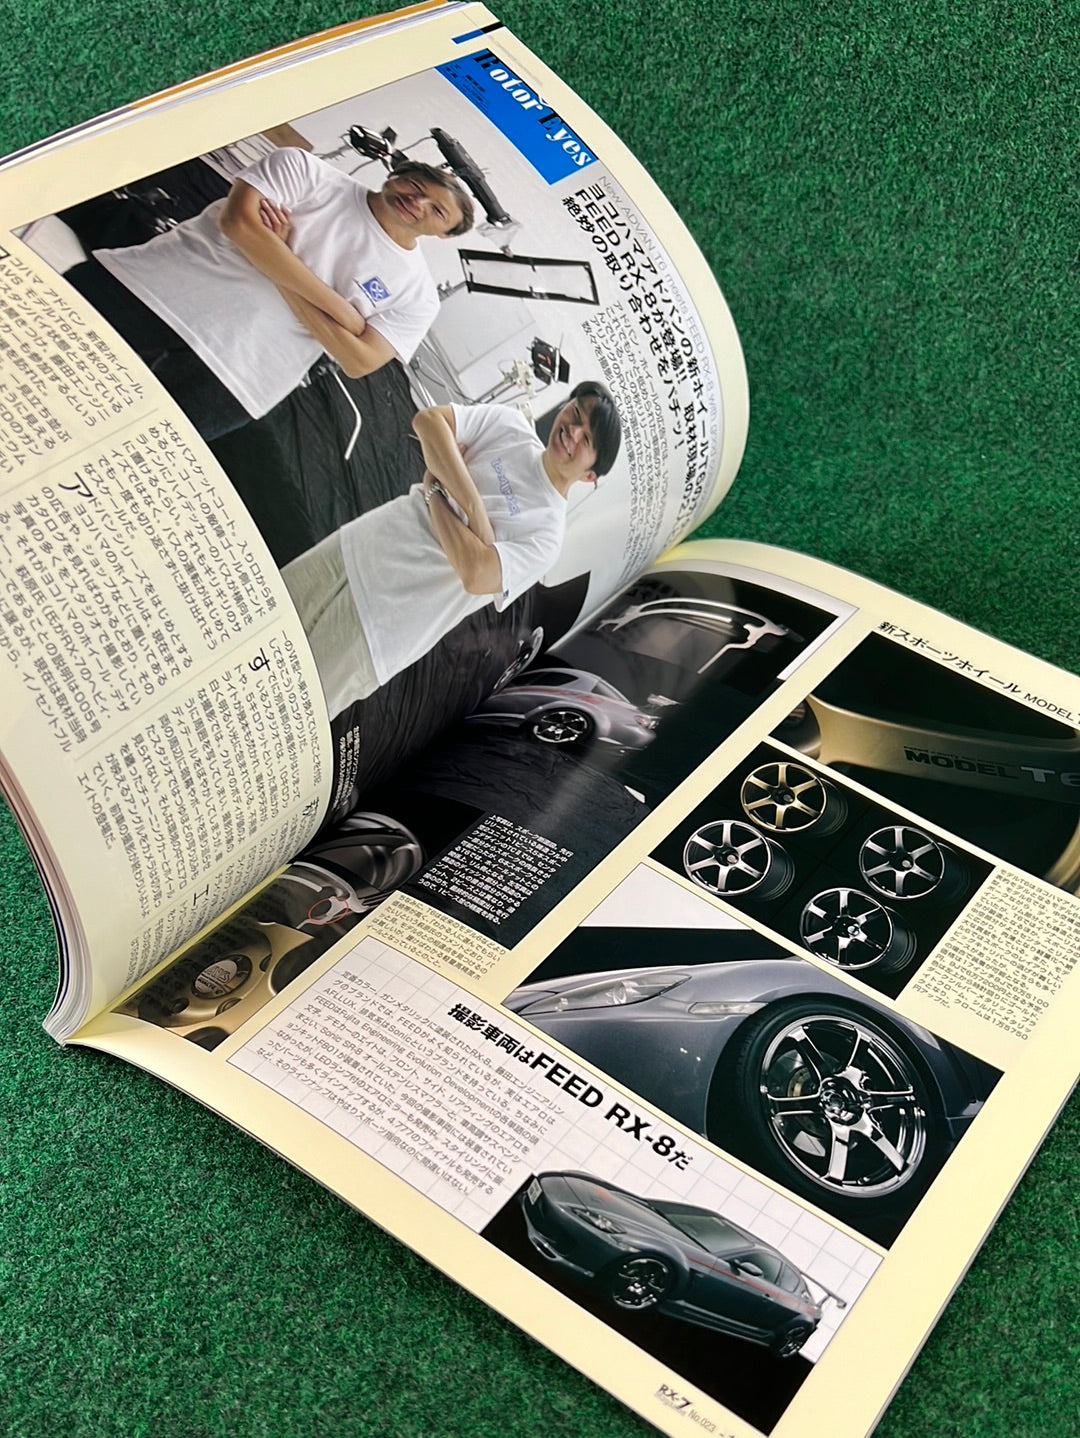 RX7 Magazine - No. 020 through No. 024